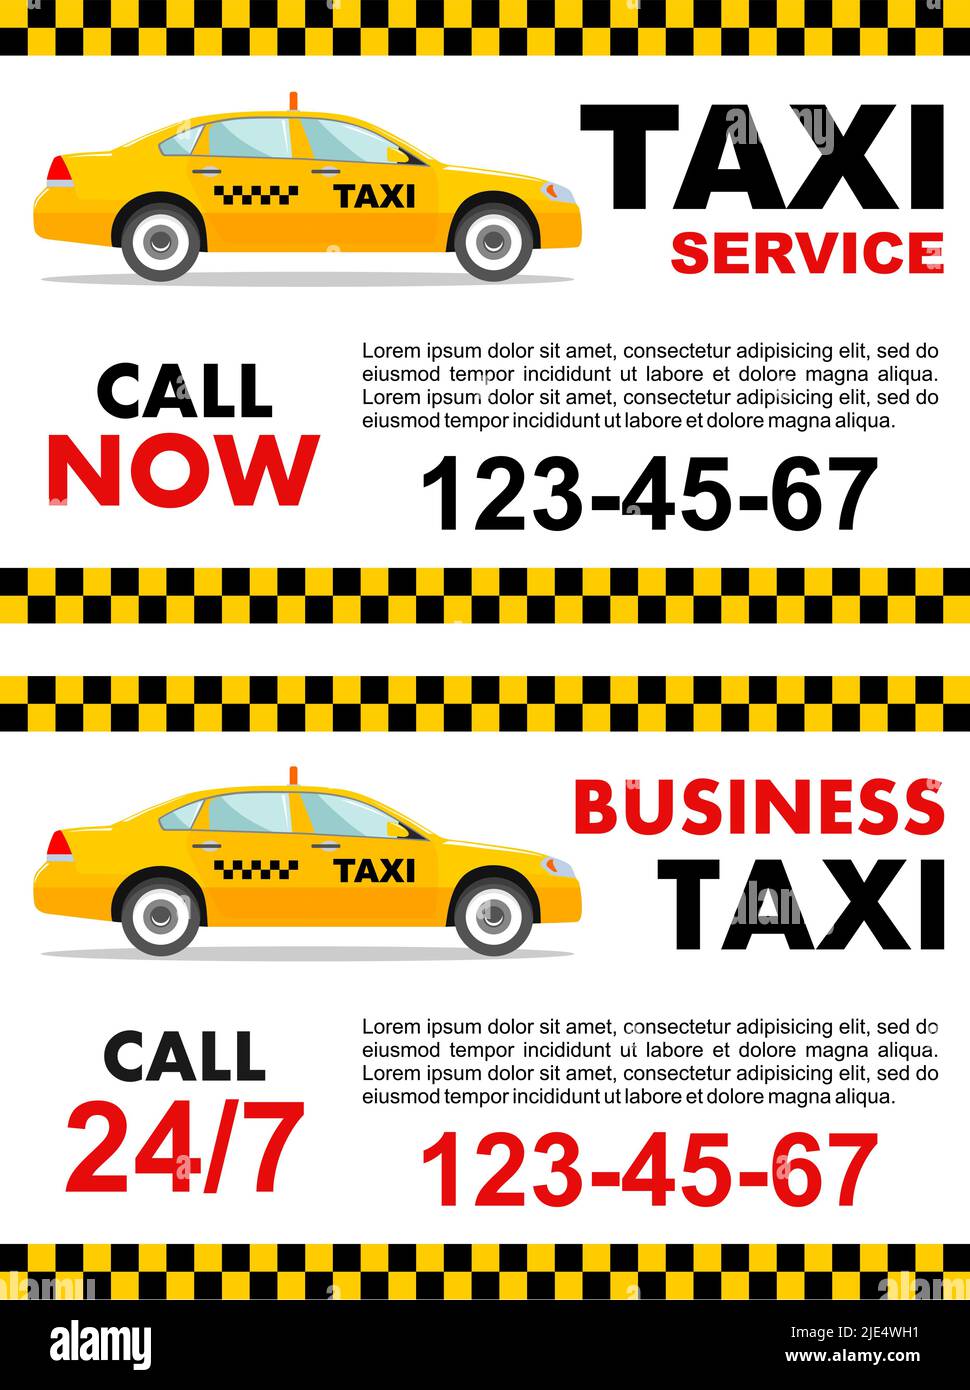 Concepto de servicio de taxi de negocios. Banner vectorial, póster o folleto. Ilustración detallada del taxi amarillo. Ilustración del Vector